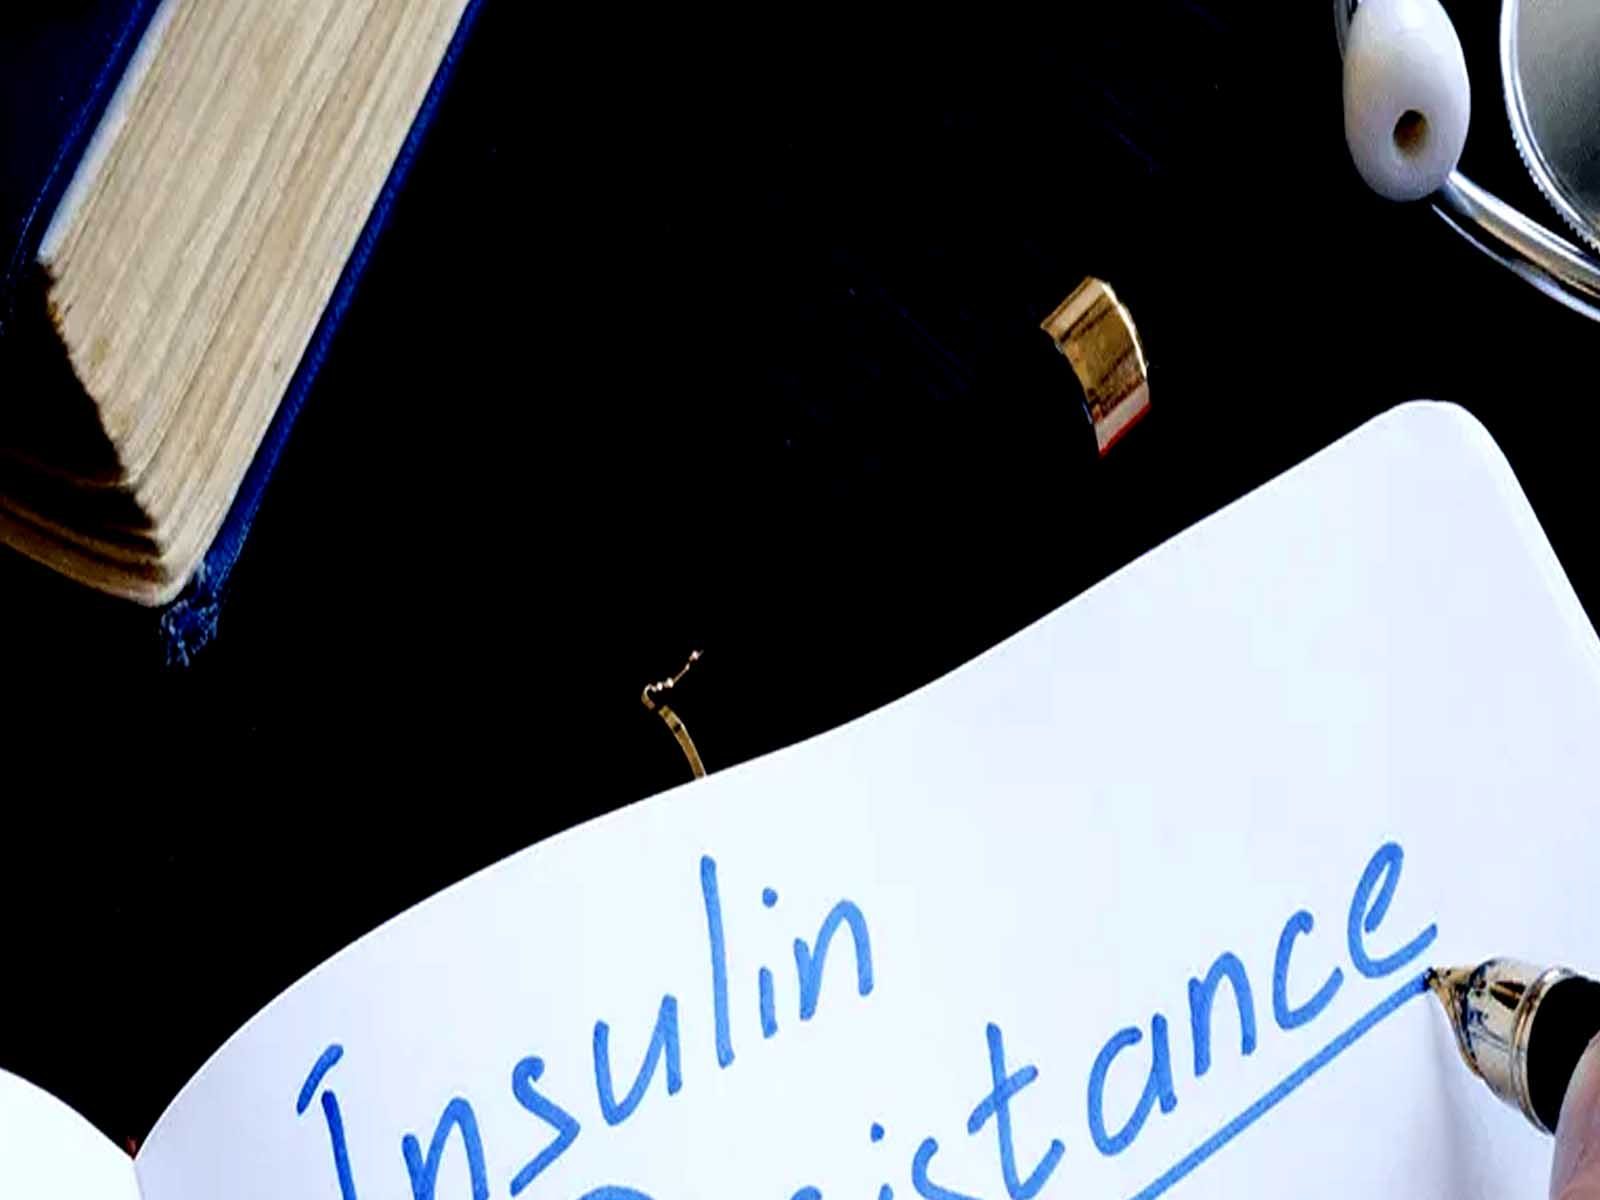 Insulin Resistance: ਇਨਸੁਲਿਨ ਪ੍ਰਤੀਰੋਧ ਸ਼ੂਗਰ ਸਮੇਤ ਬਣ ਸਕਦਾ ਹੈ ਕਈ ਬਿਮਾਰੀਆਂ ਦਾ ਕਾਰਨ, ਇੰਝ ਕਰੋ ਬਚਾਅ